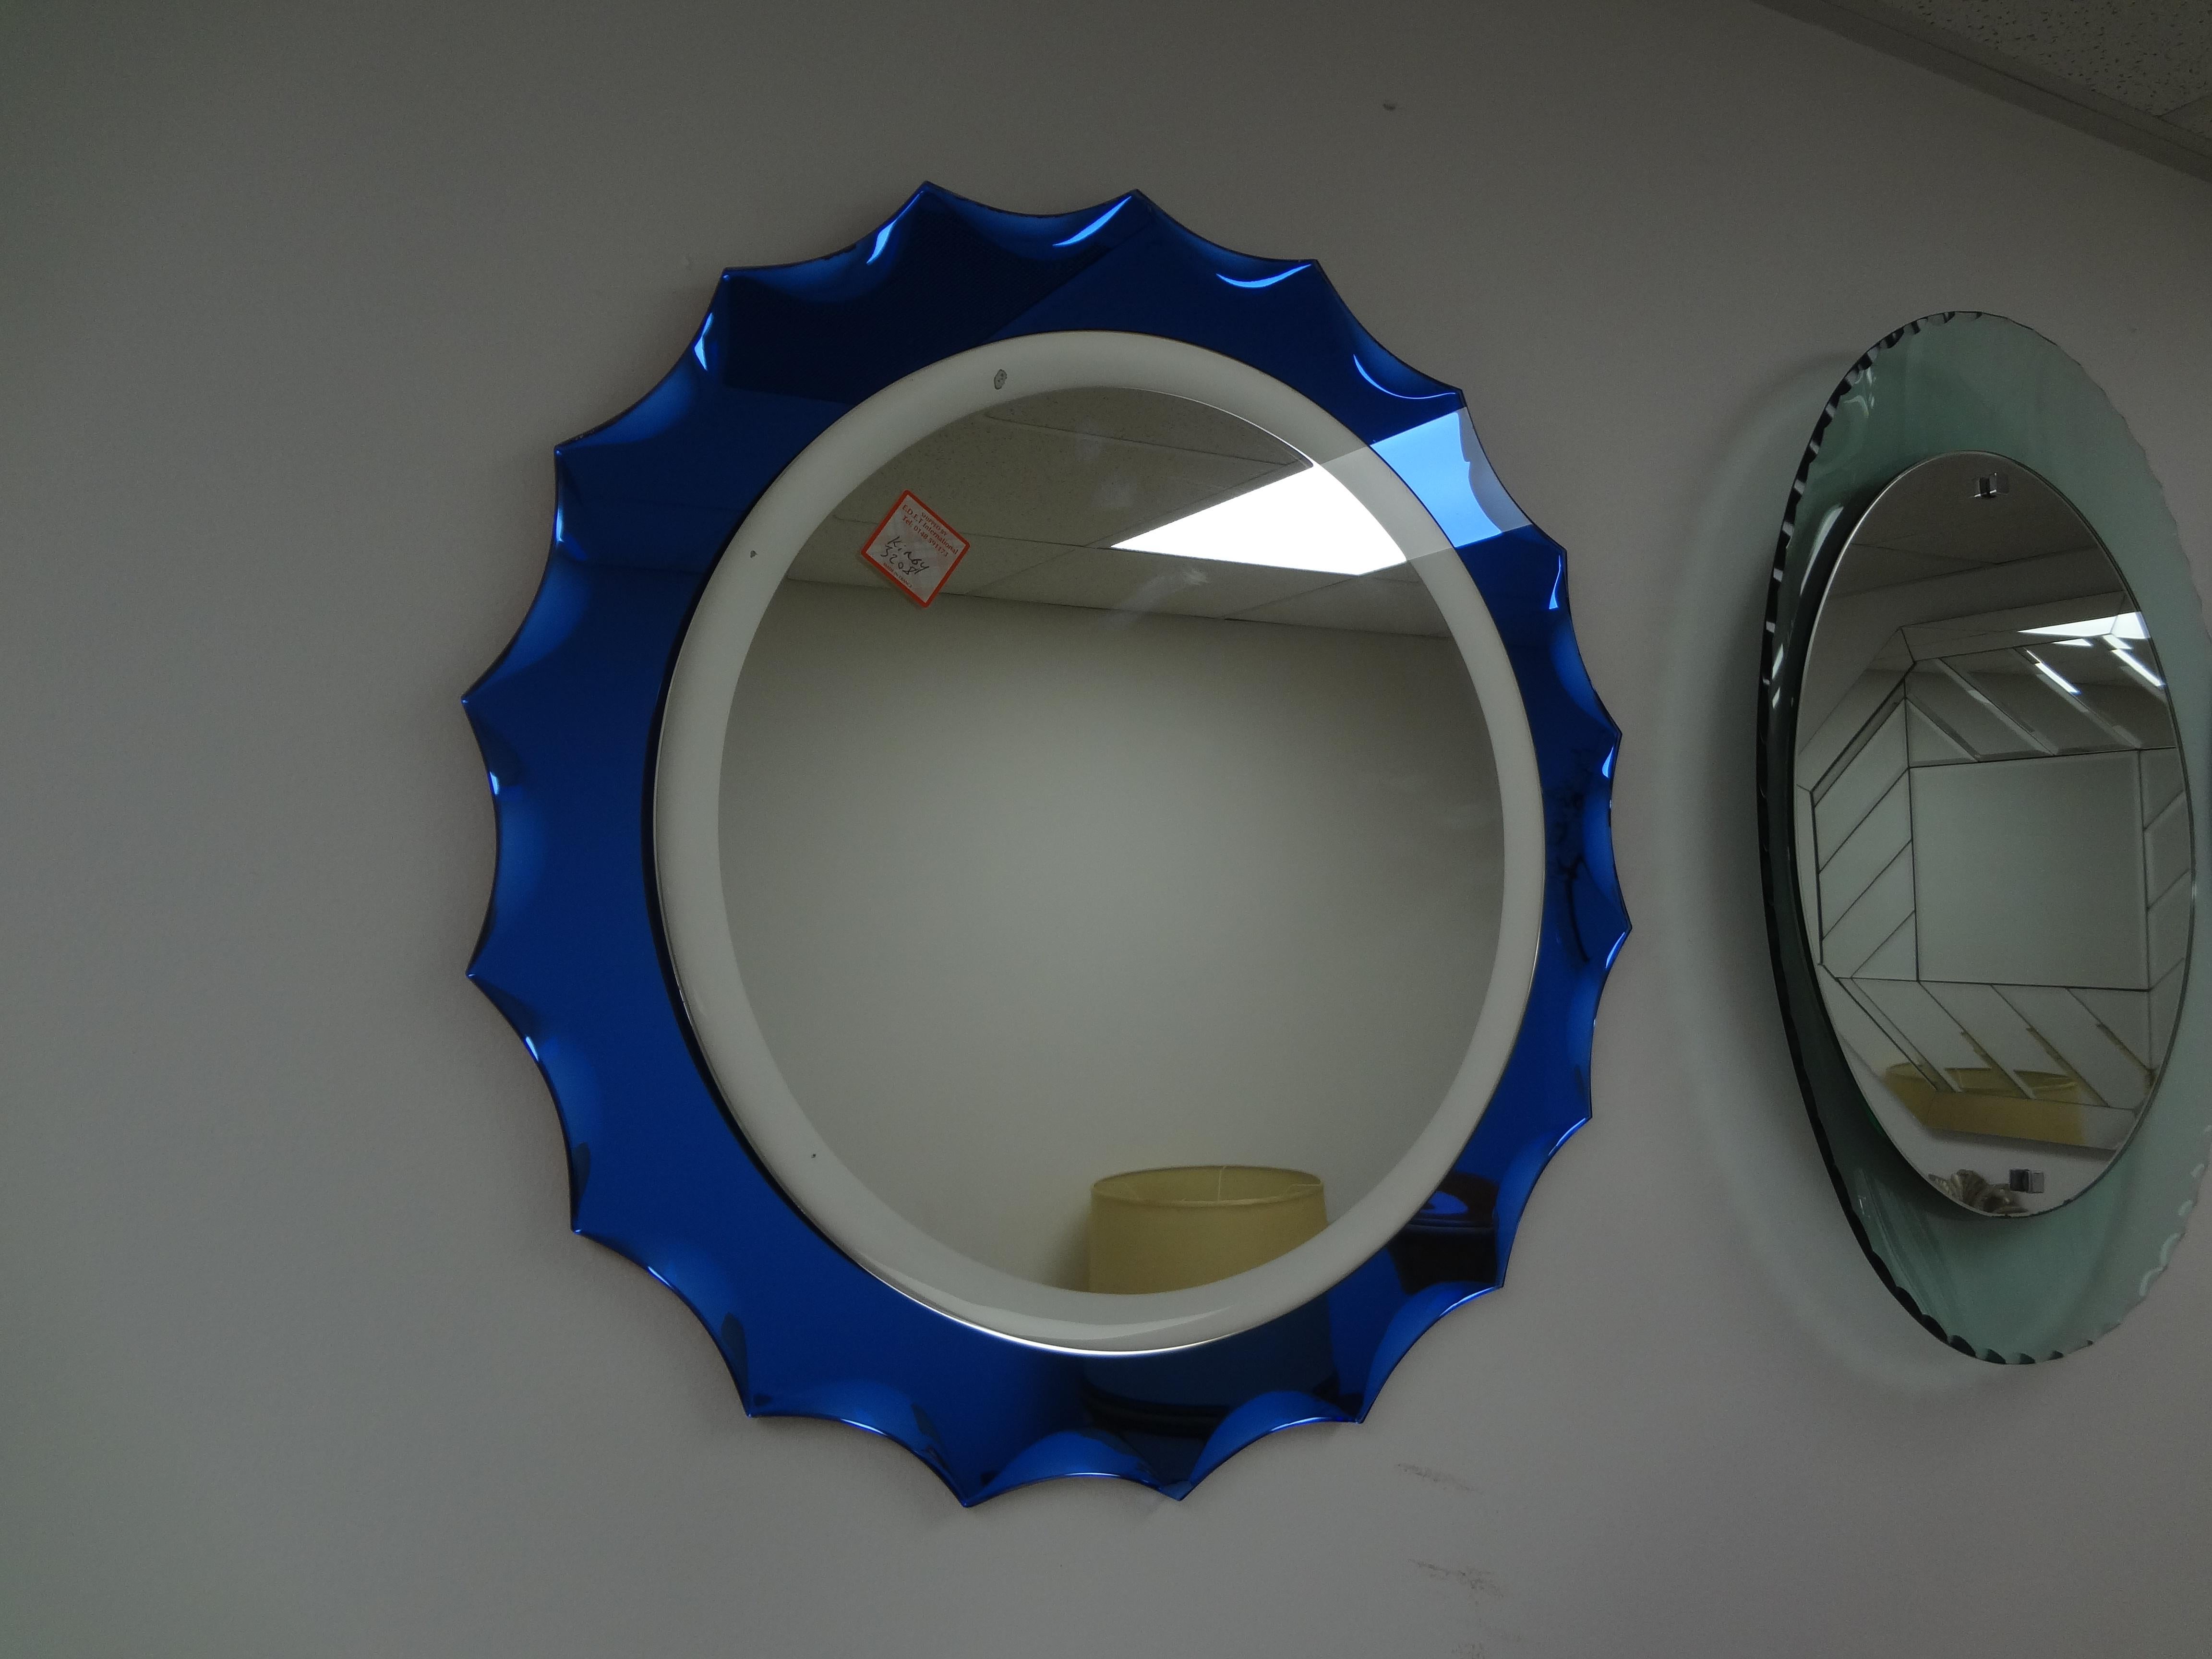 Italienische Moderne Fontana Arte inspiriert blau abgeschrägten Spiegel.
Formschöner italienischer, von Fontana Arte inspirierter, abgeschrägter Spiegel aus der Mitte des Jahrhunderts. Dieser schöne abgeschrägte italienische Vintage-Spiegel hat